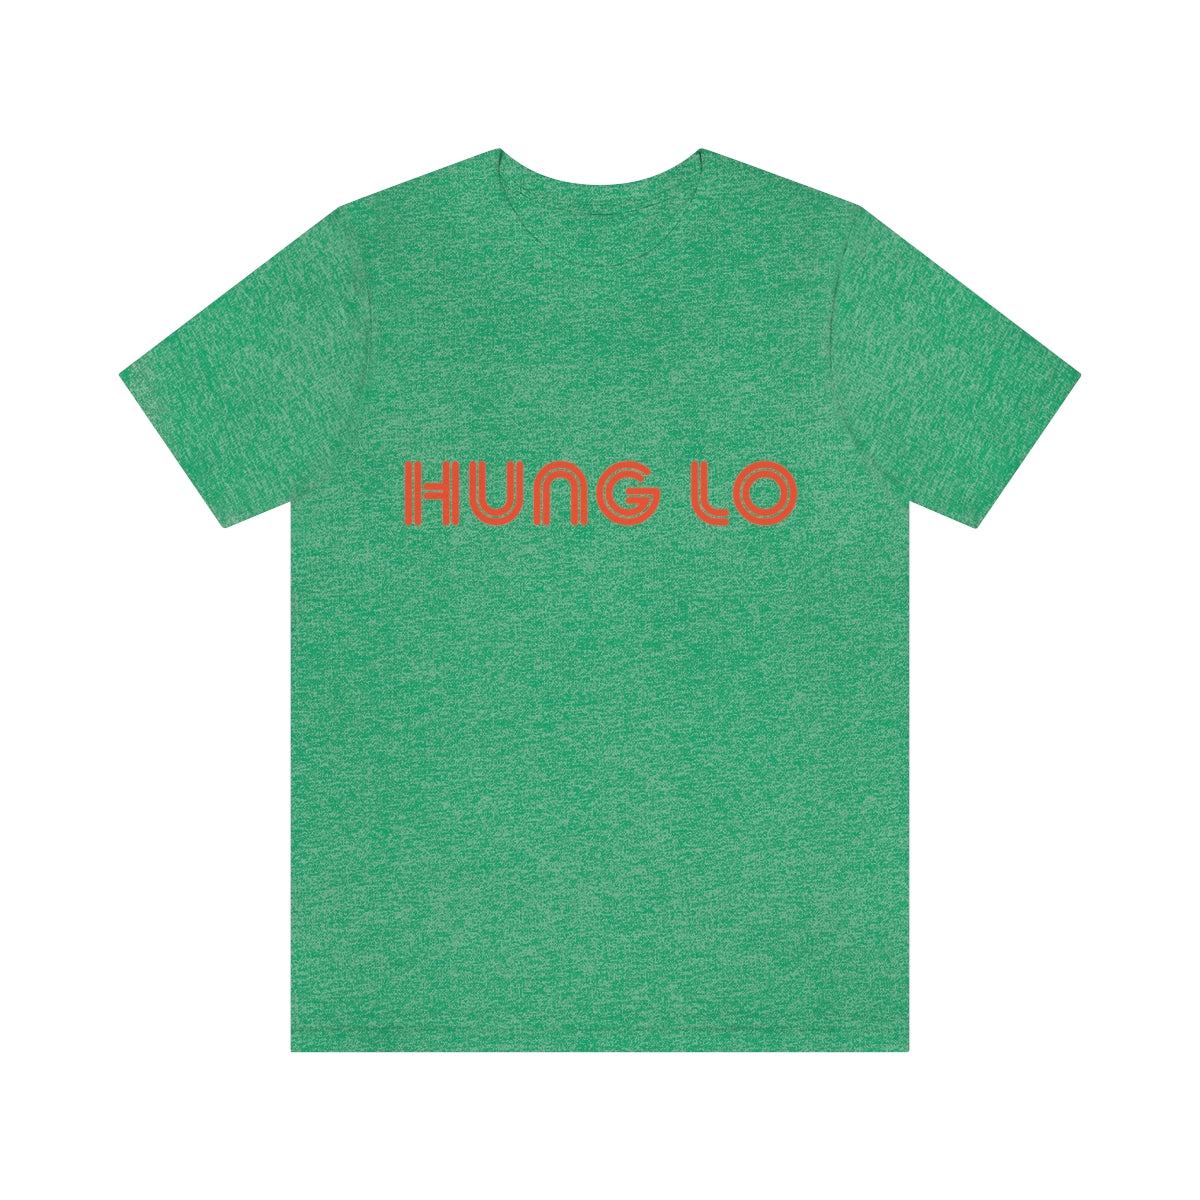 Hung Lo T-Shirt